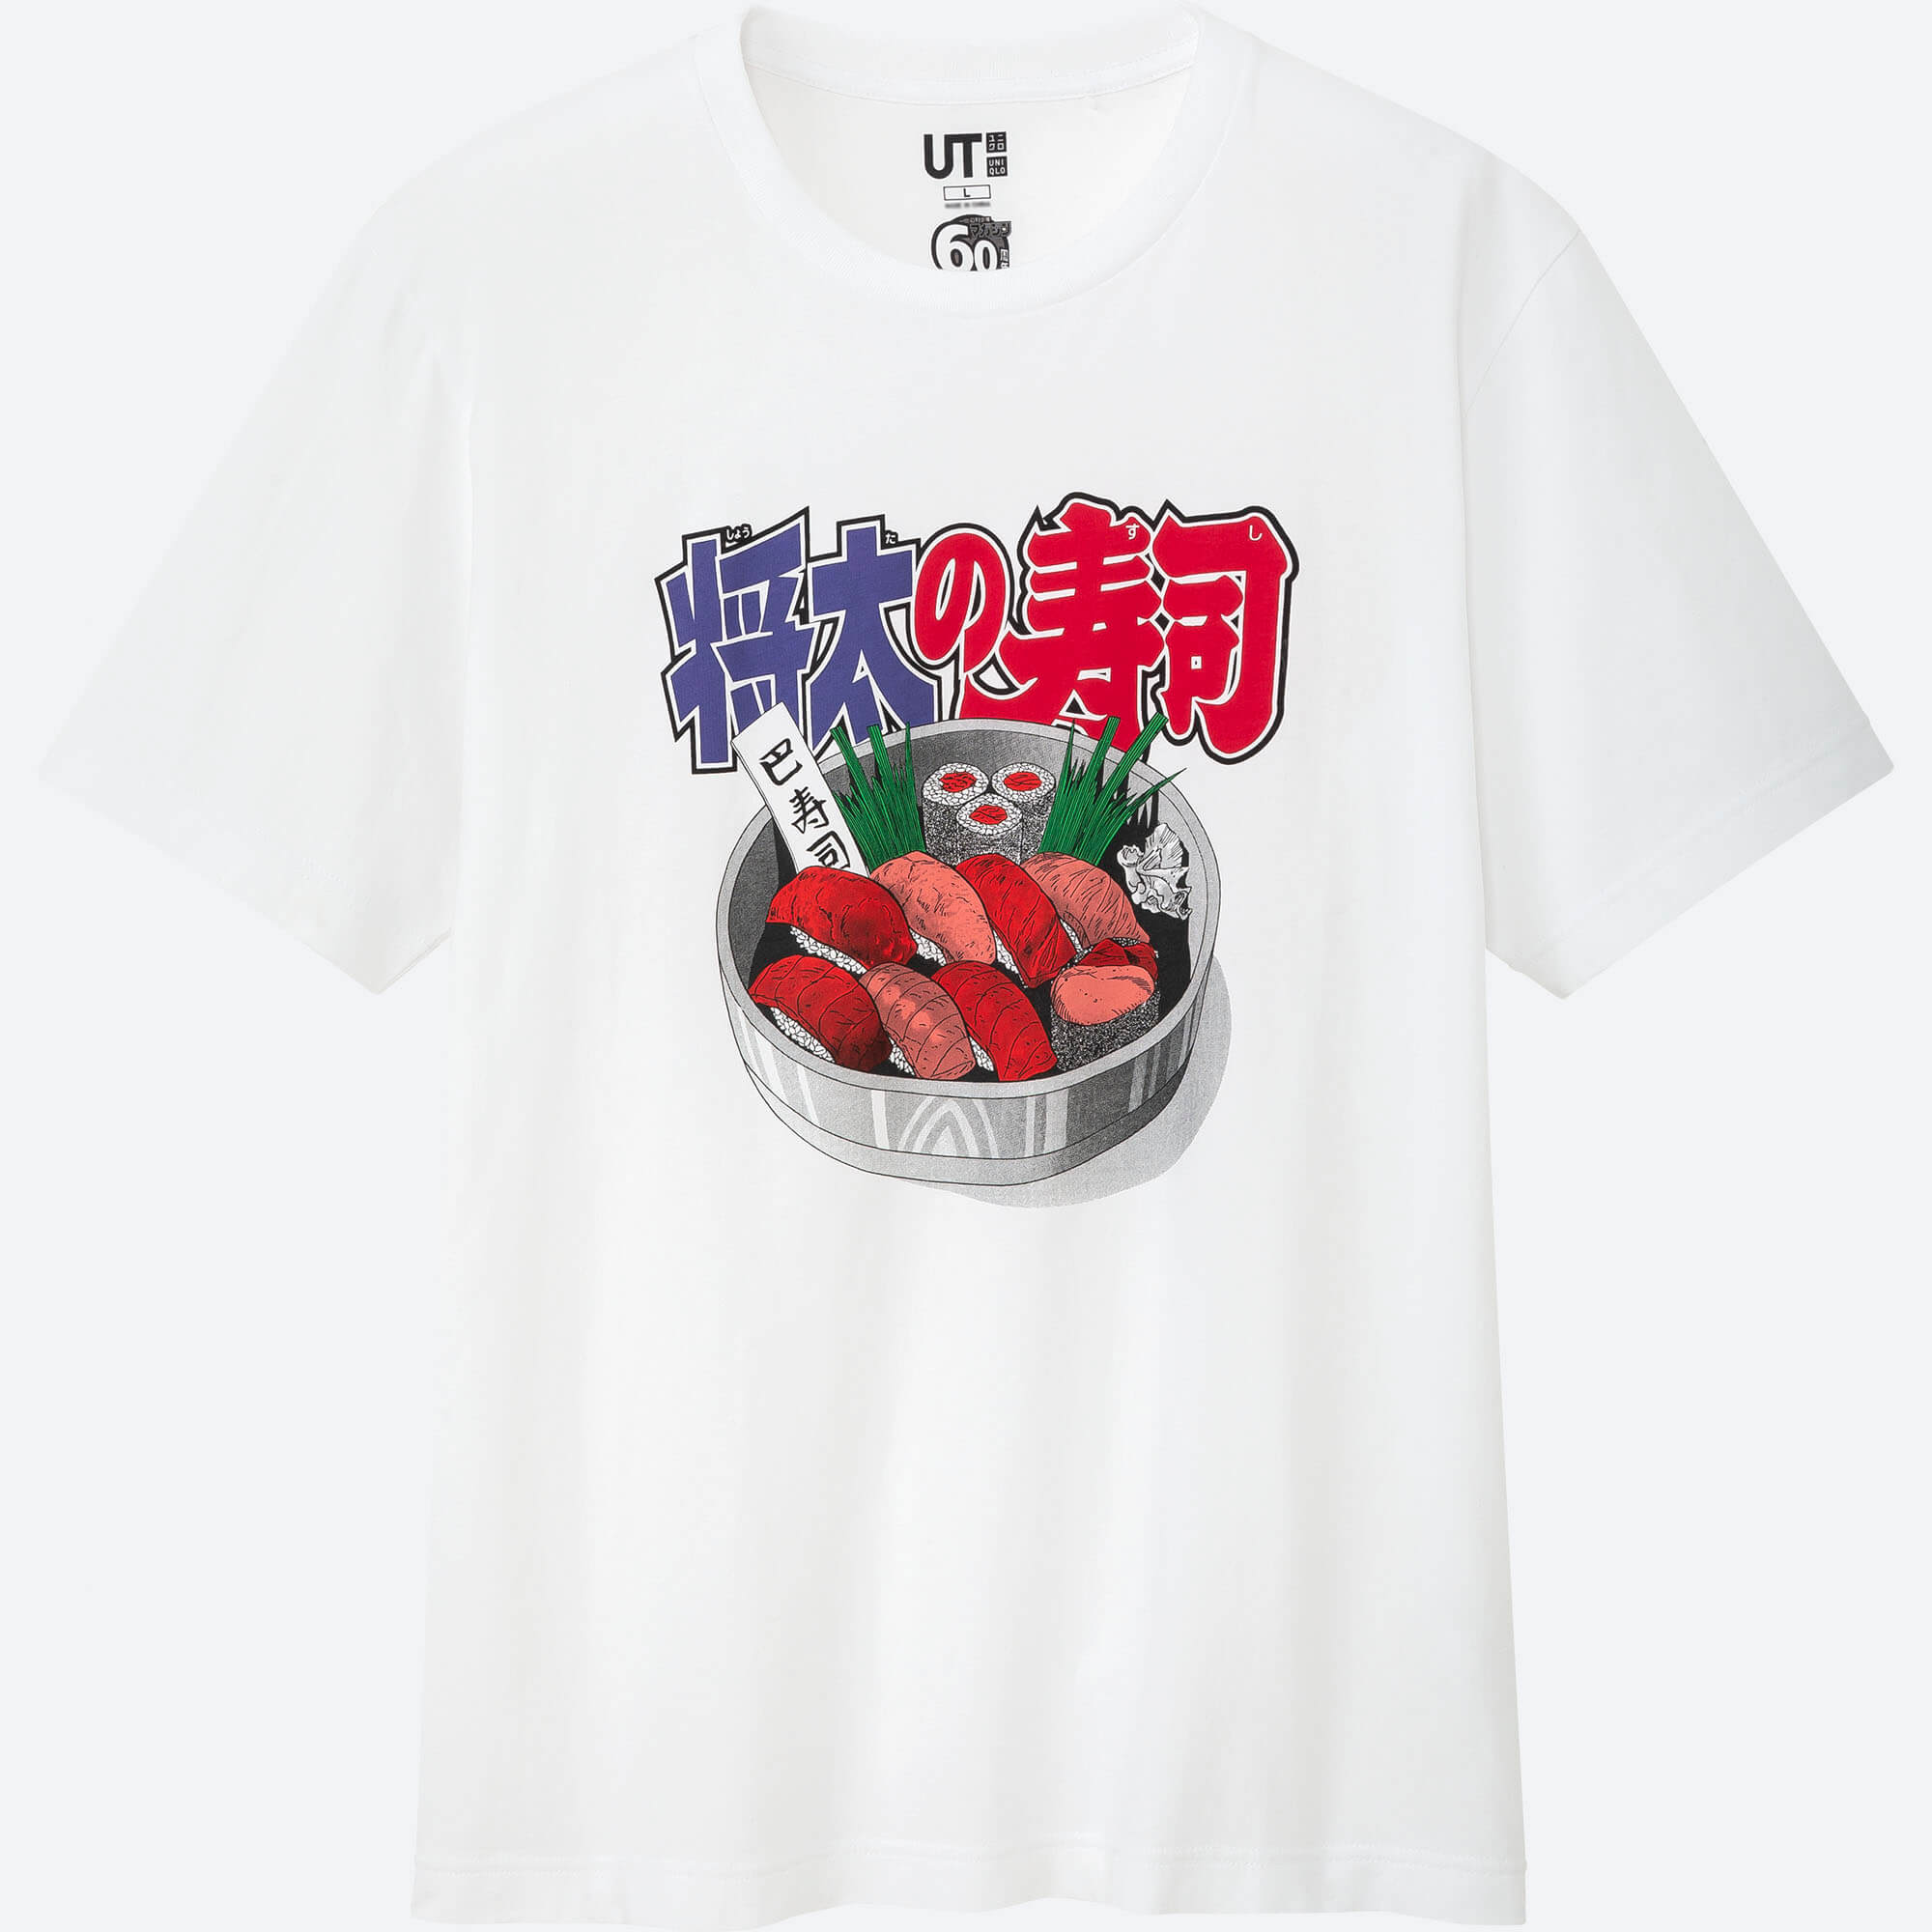 ユニクロ UT 将太の寿司 漫画 Tシャツ Uniqlo T-shirts manga anime